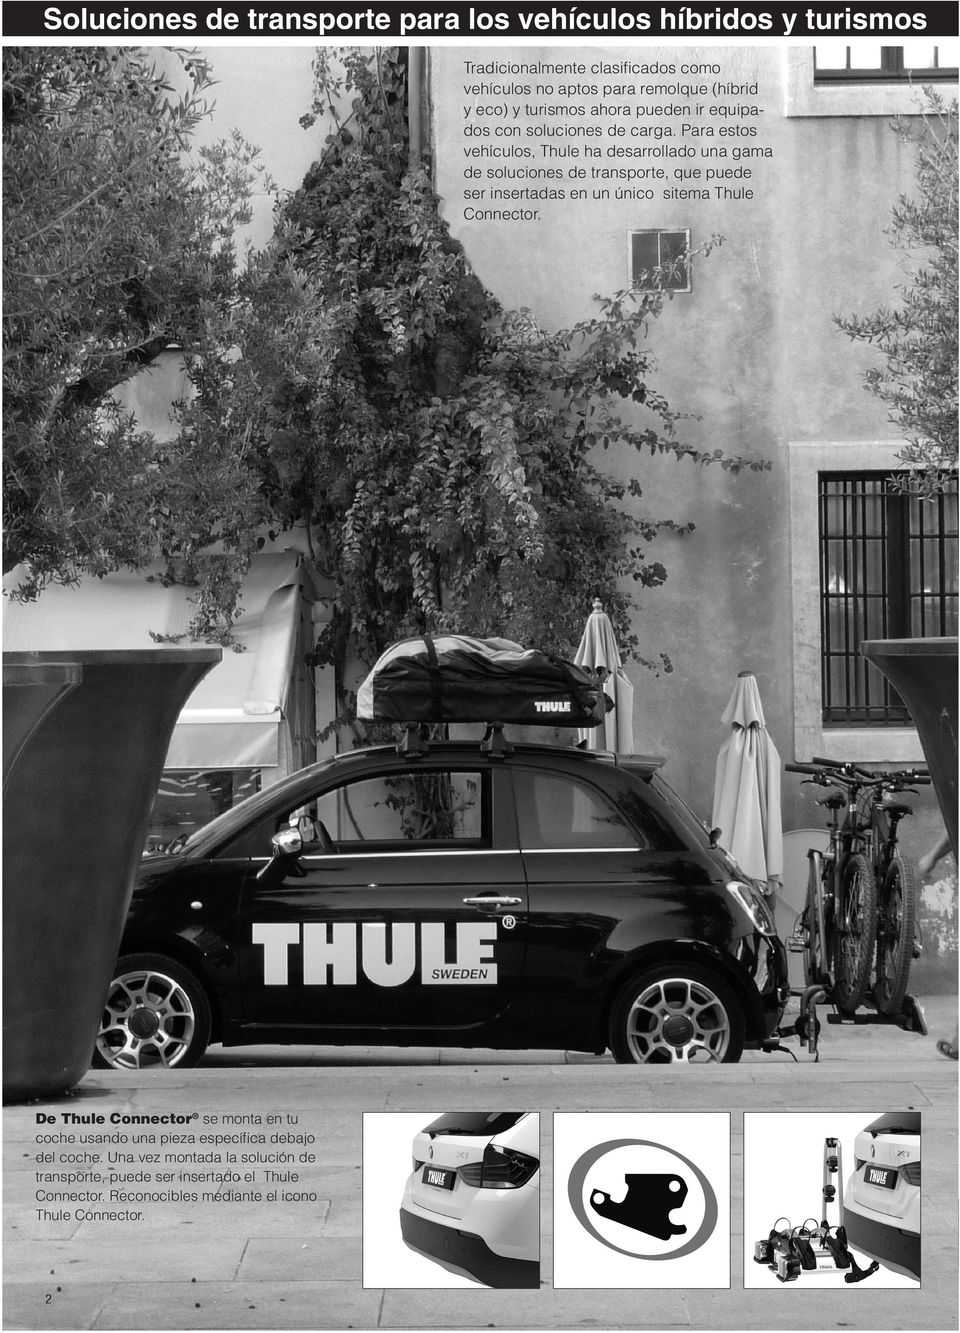 Para estos vehículos, Thule ha desarrollado una gama de soluciones de transporte, que puede ser insertadas en un único sitema Thule Connector.